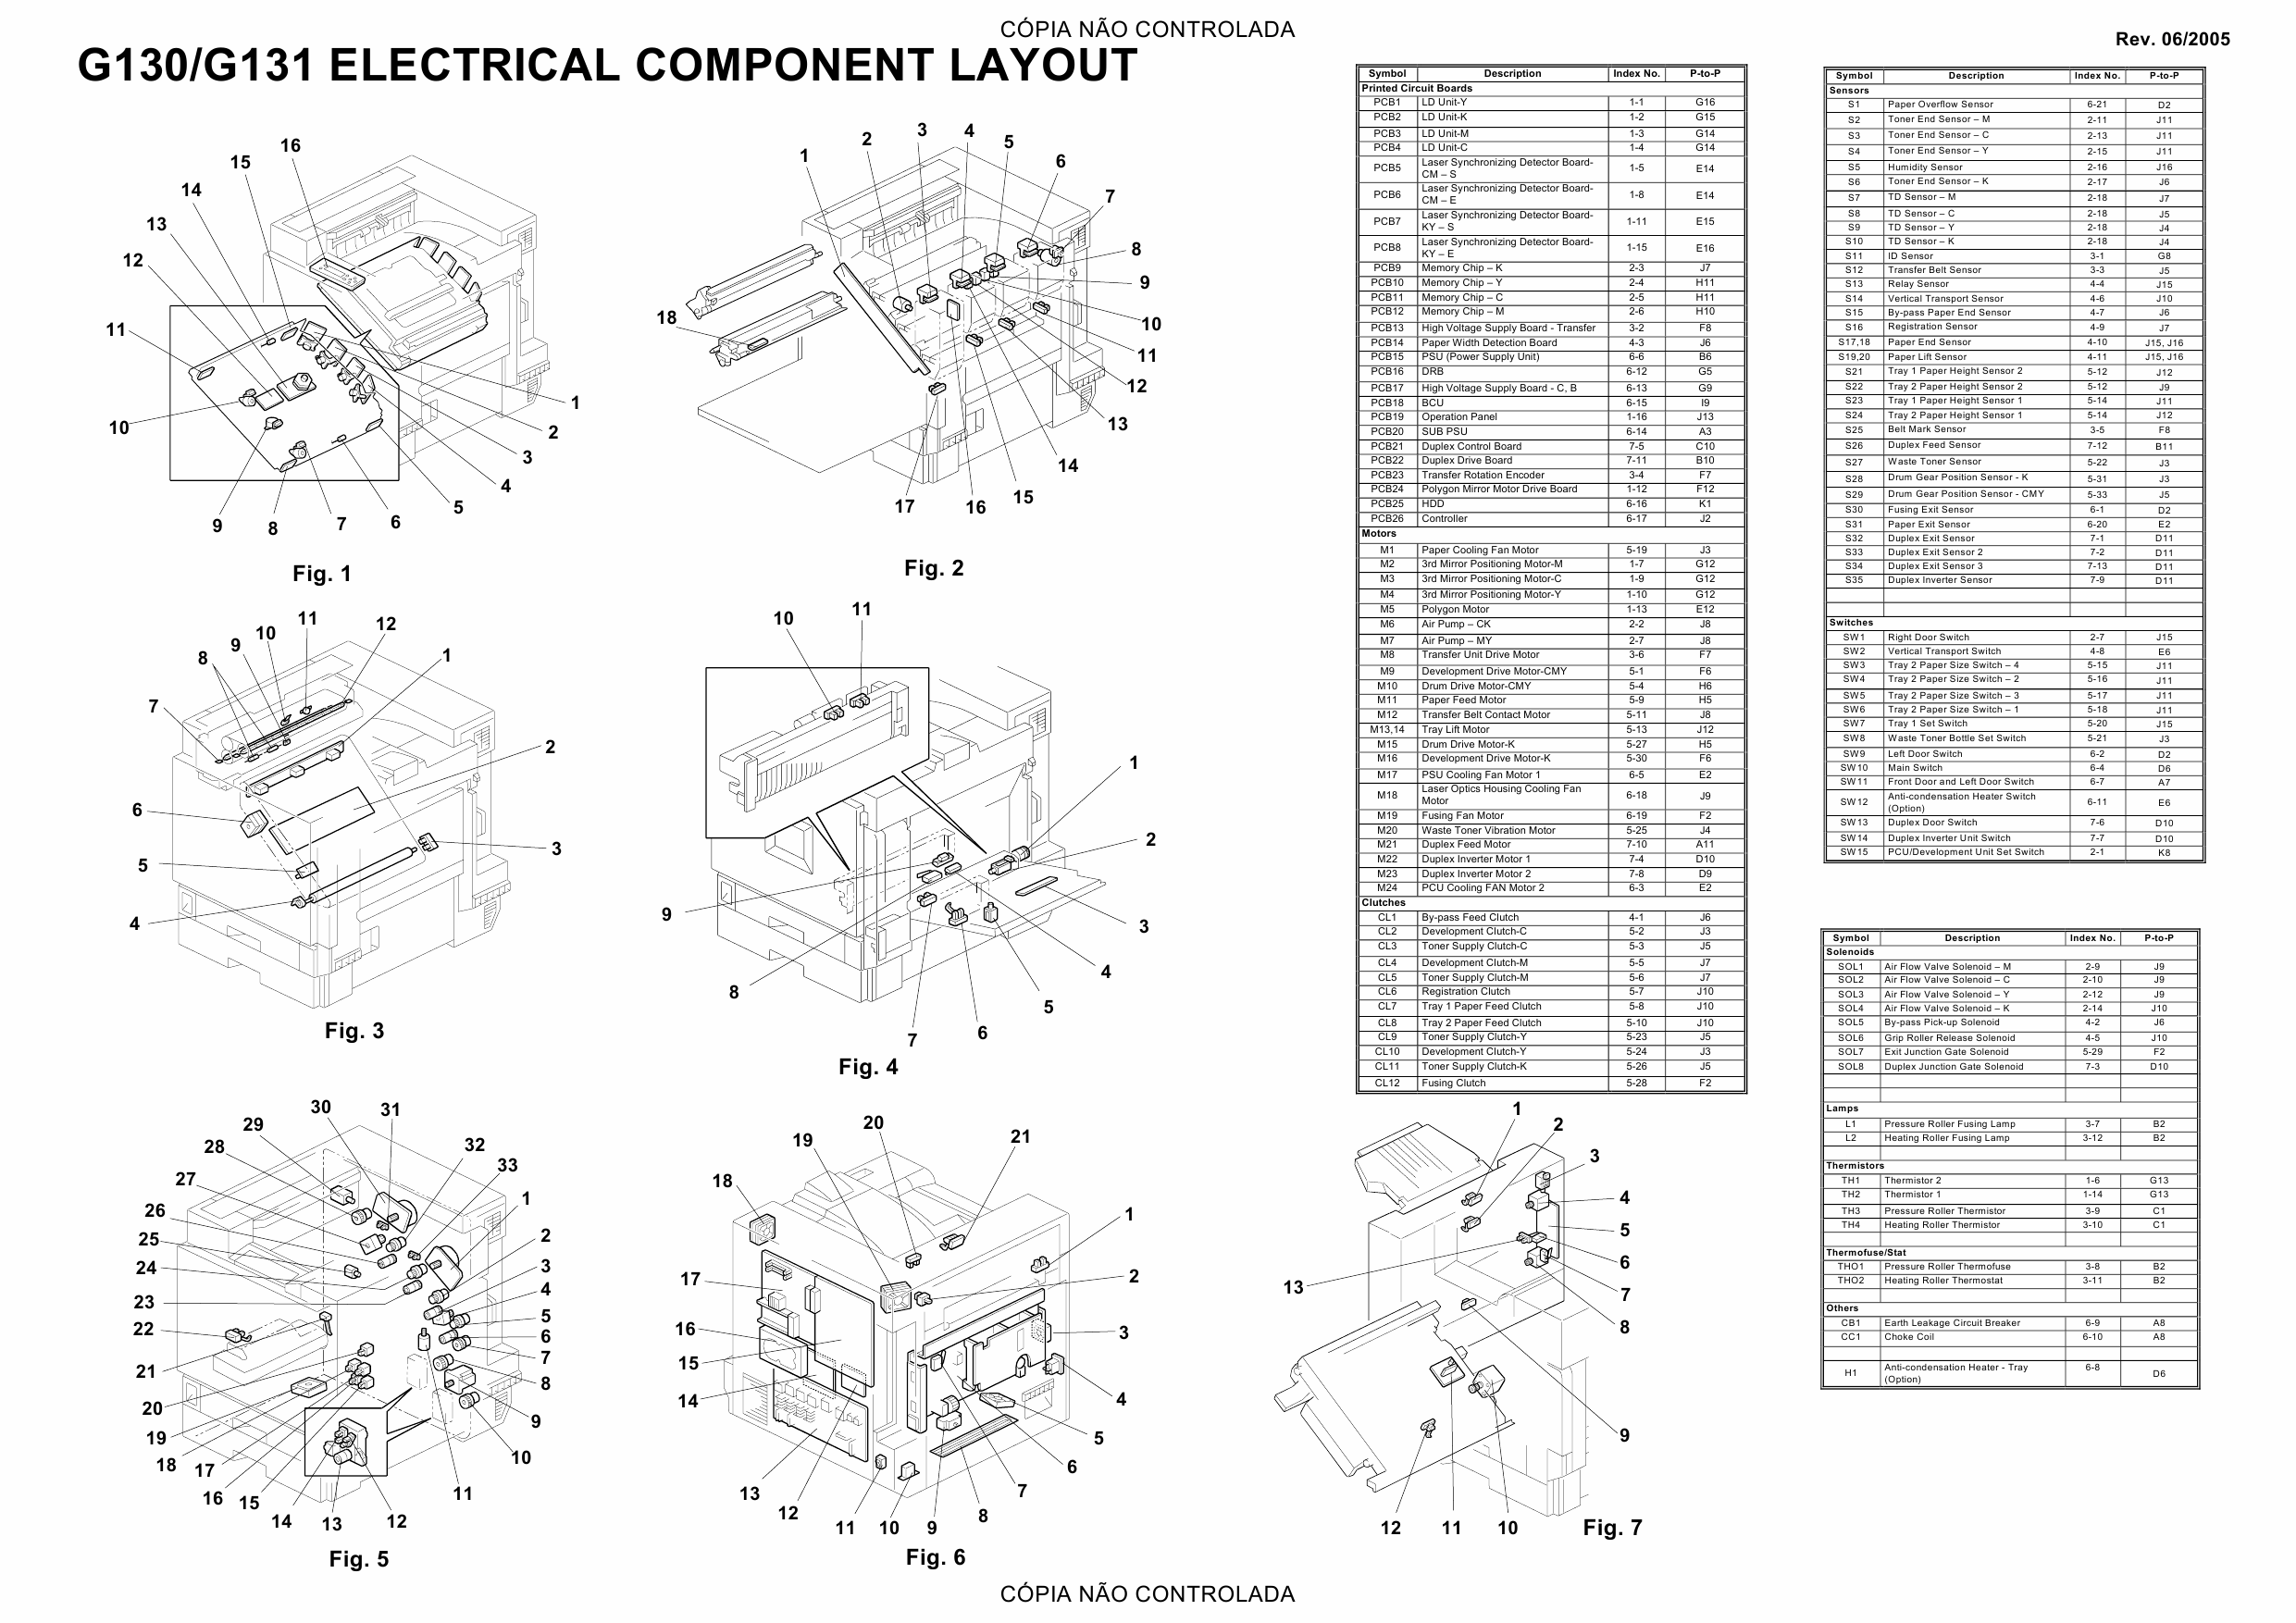 RICOH Aficio CL-7200 7300 G130 G131 Circuit Diagram-2